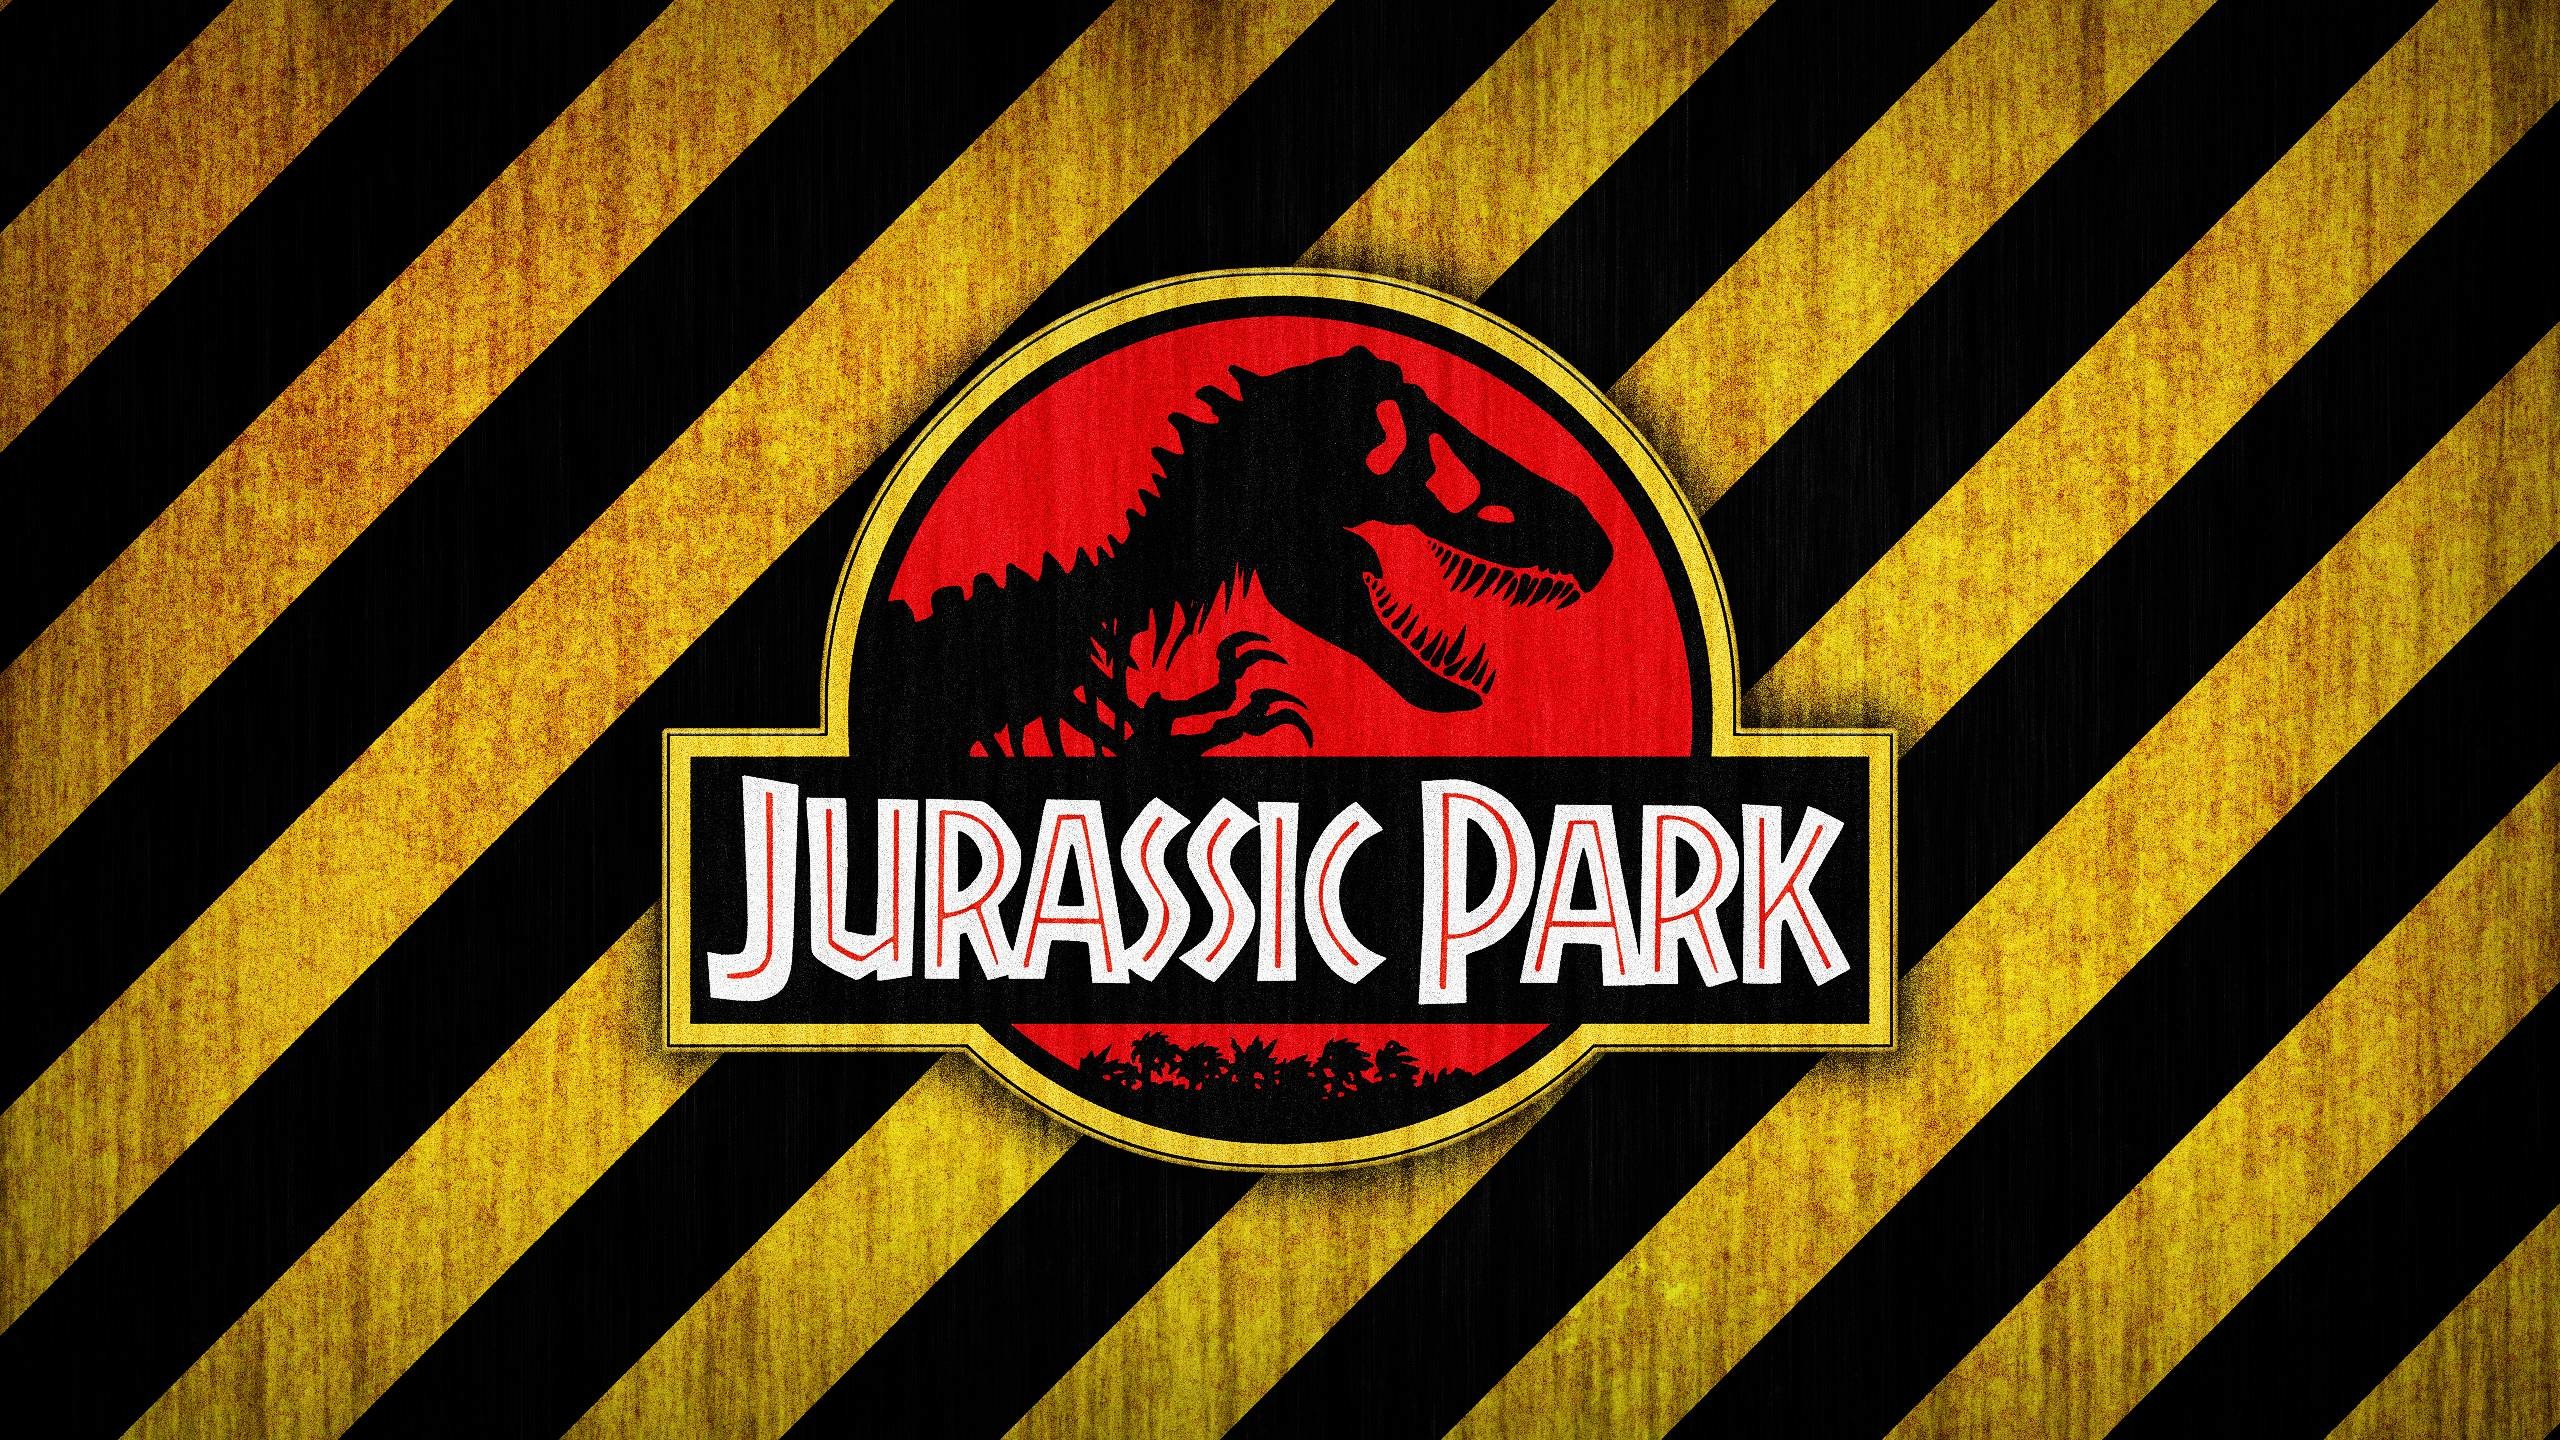 2560x1440 Wallpapers For > Jurassic Park Logo Wallpaper